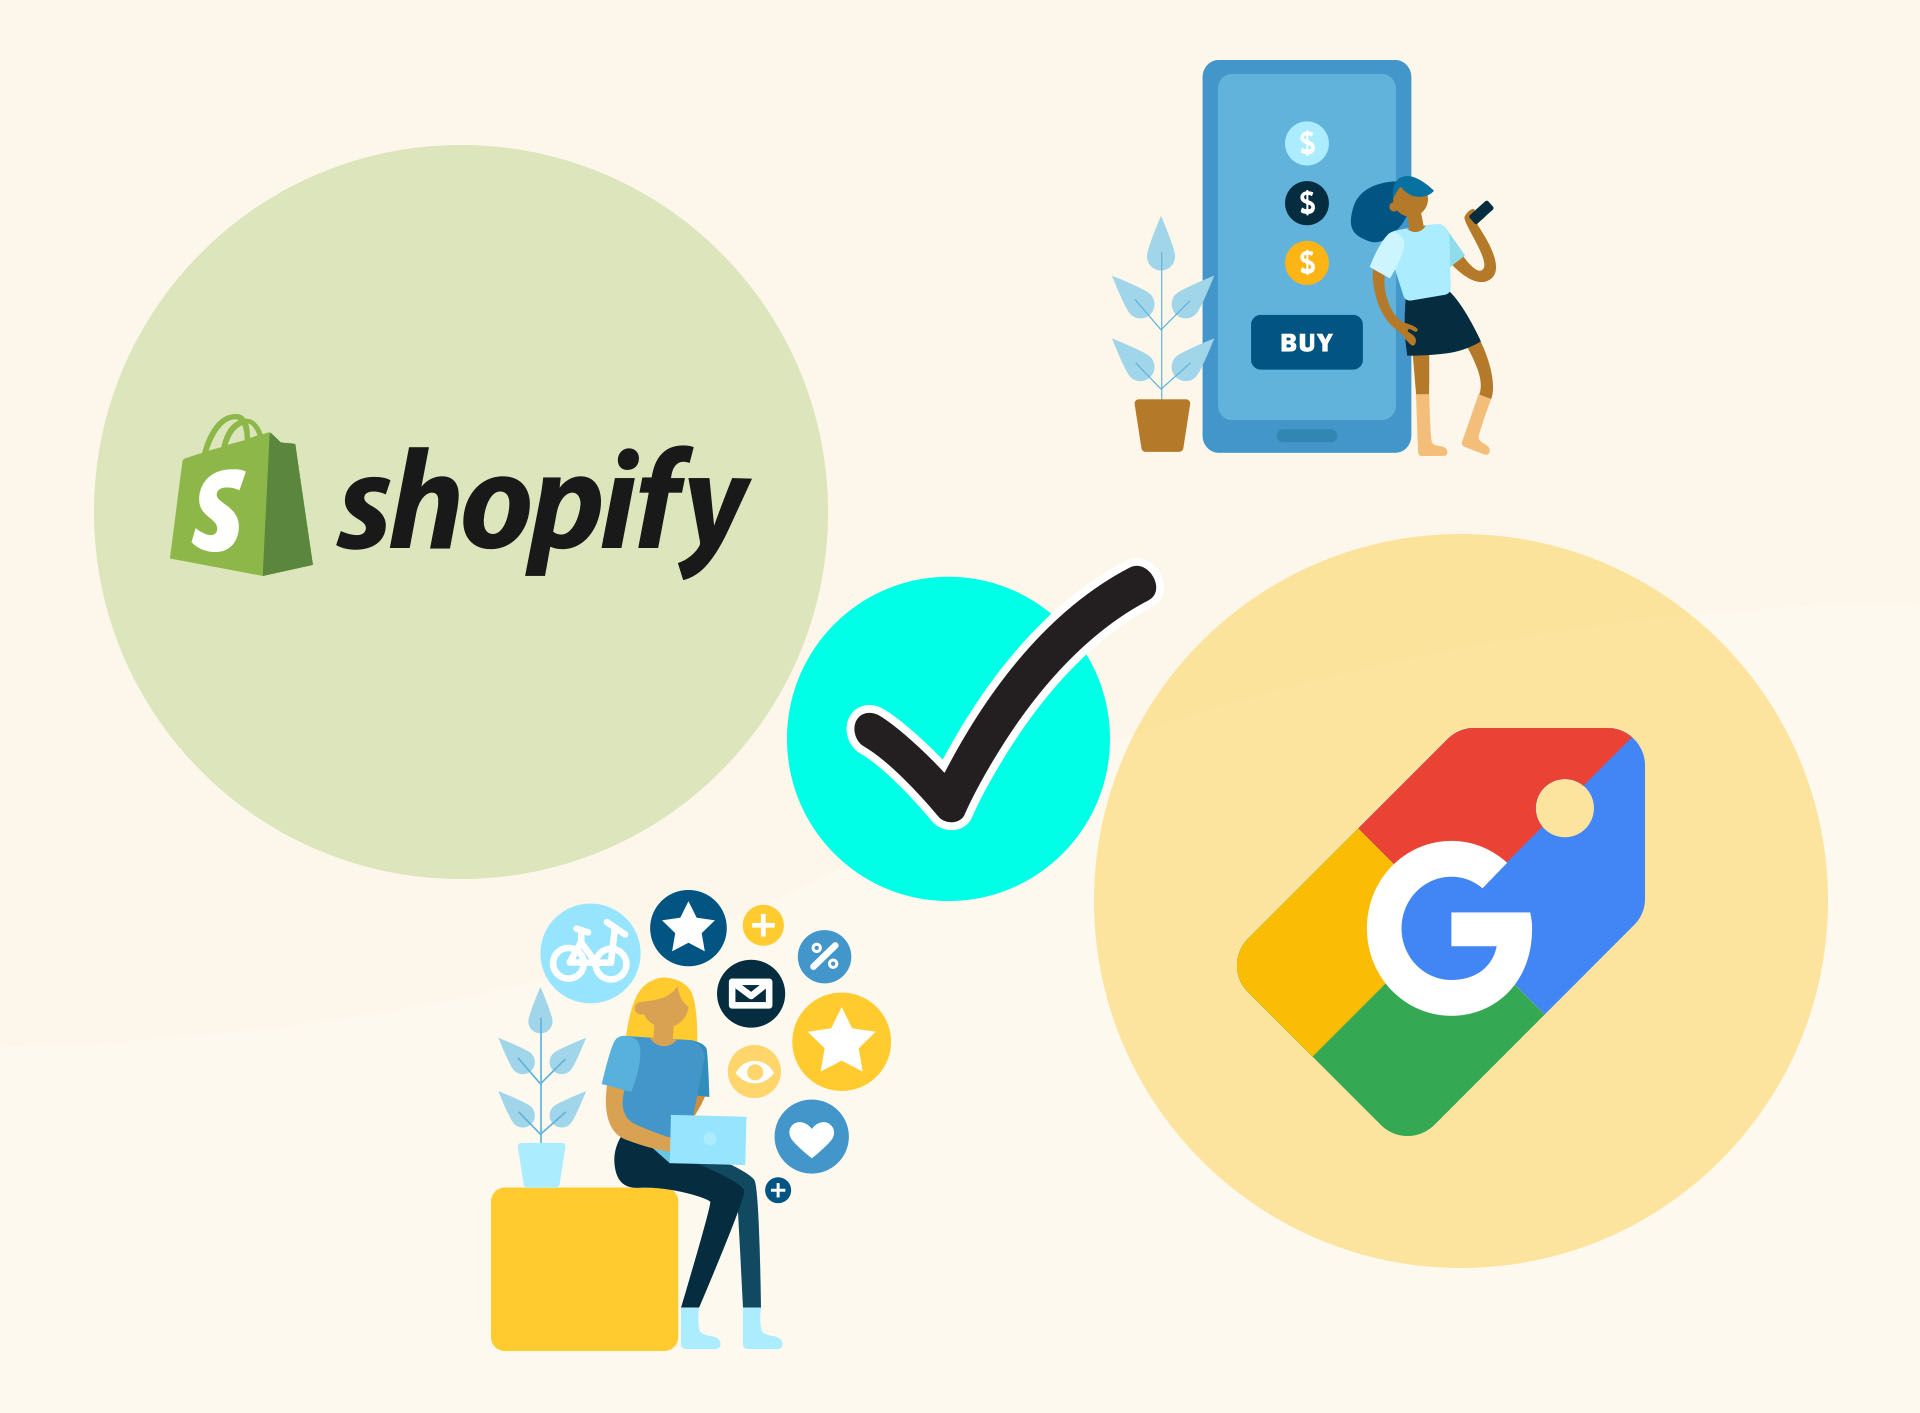 Η Google συνεργάζεται με το Shopify στη διεύρυνση των δυνατοτήτων του ηλεκτρονικού εμπορίου